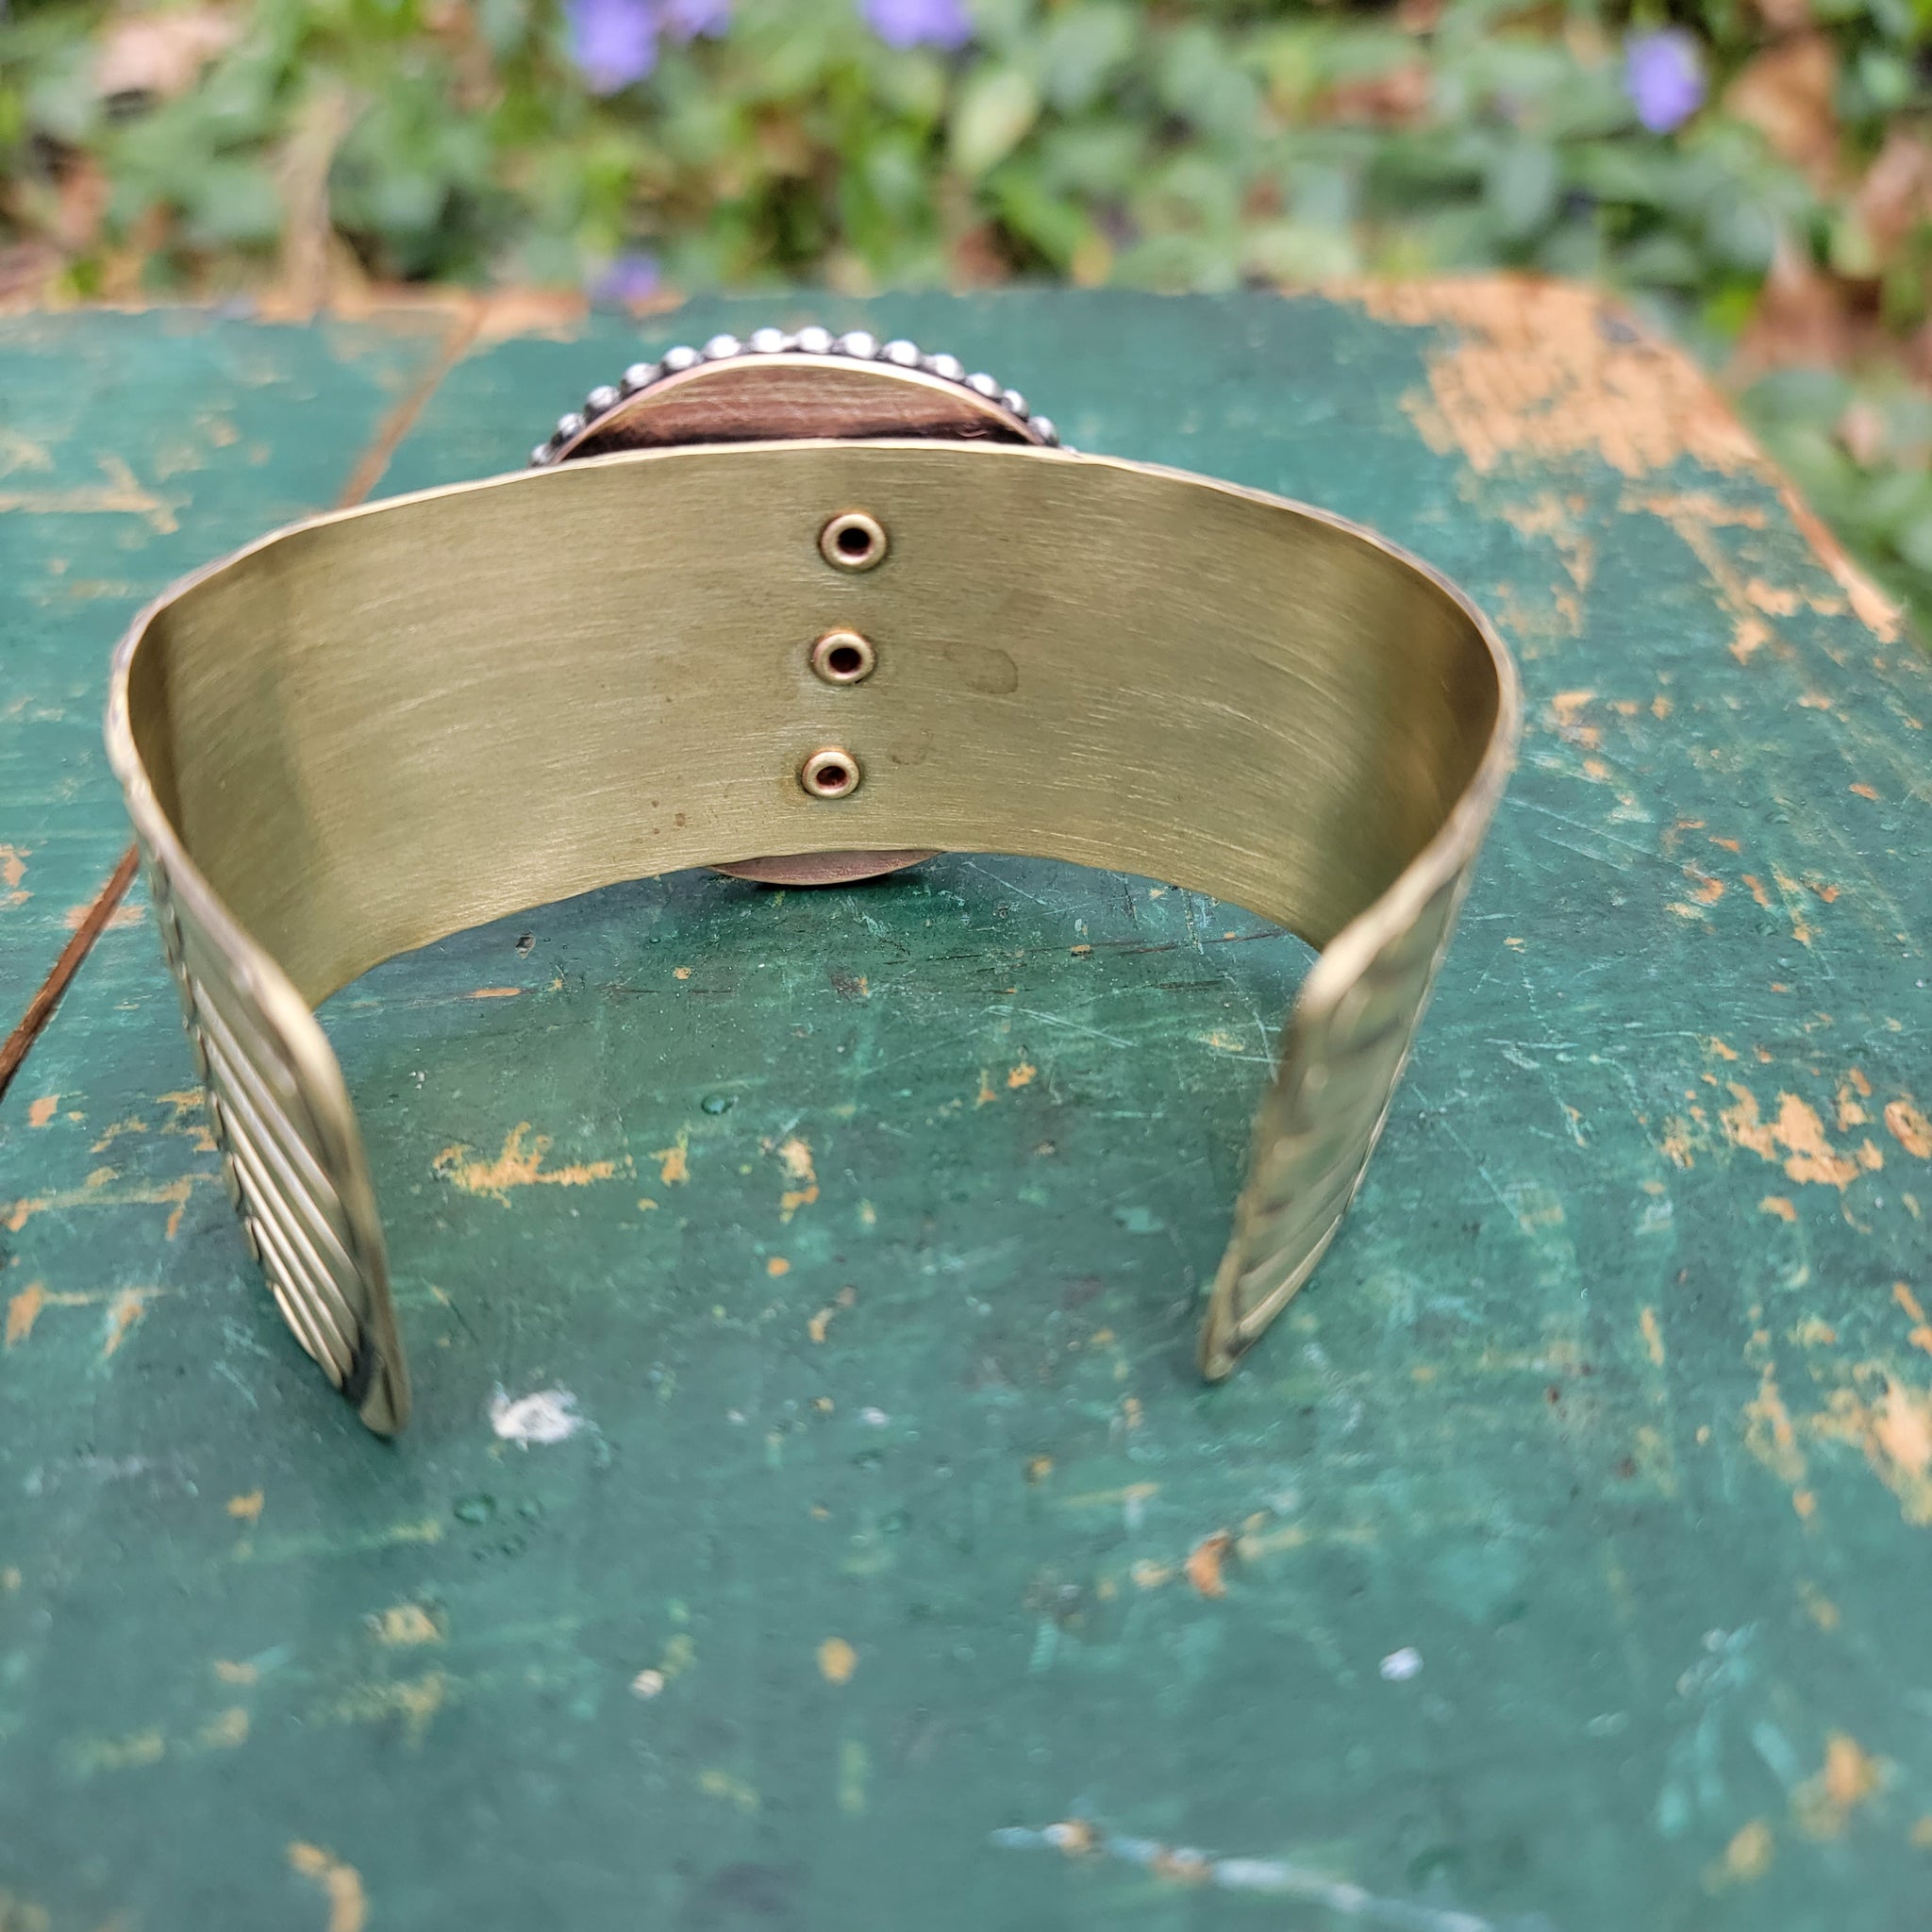 Green Wood Grain Ceramic Cab Statement Cuff Bracelets in Brass